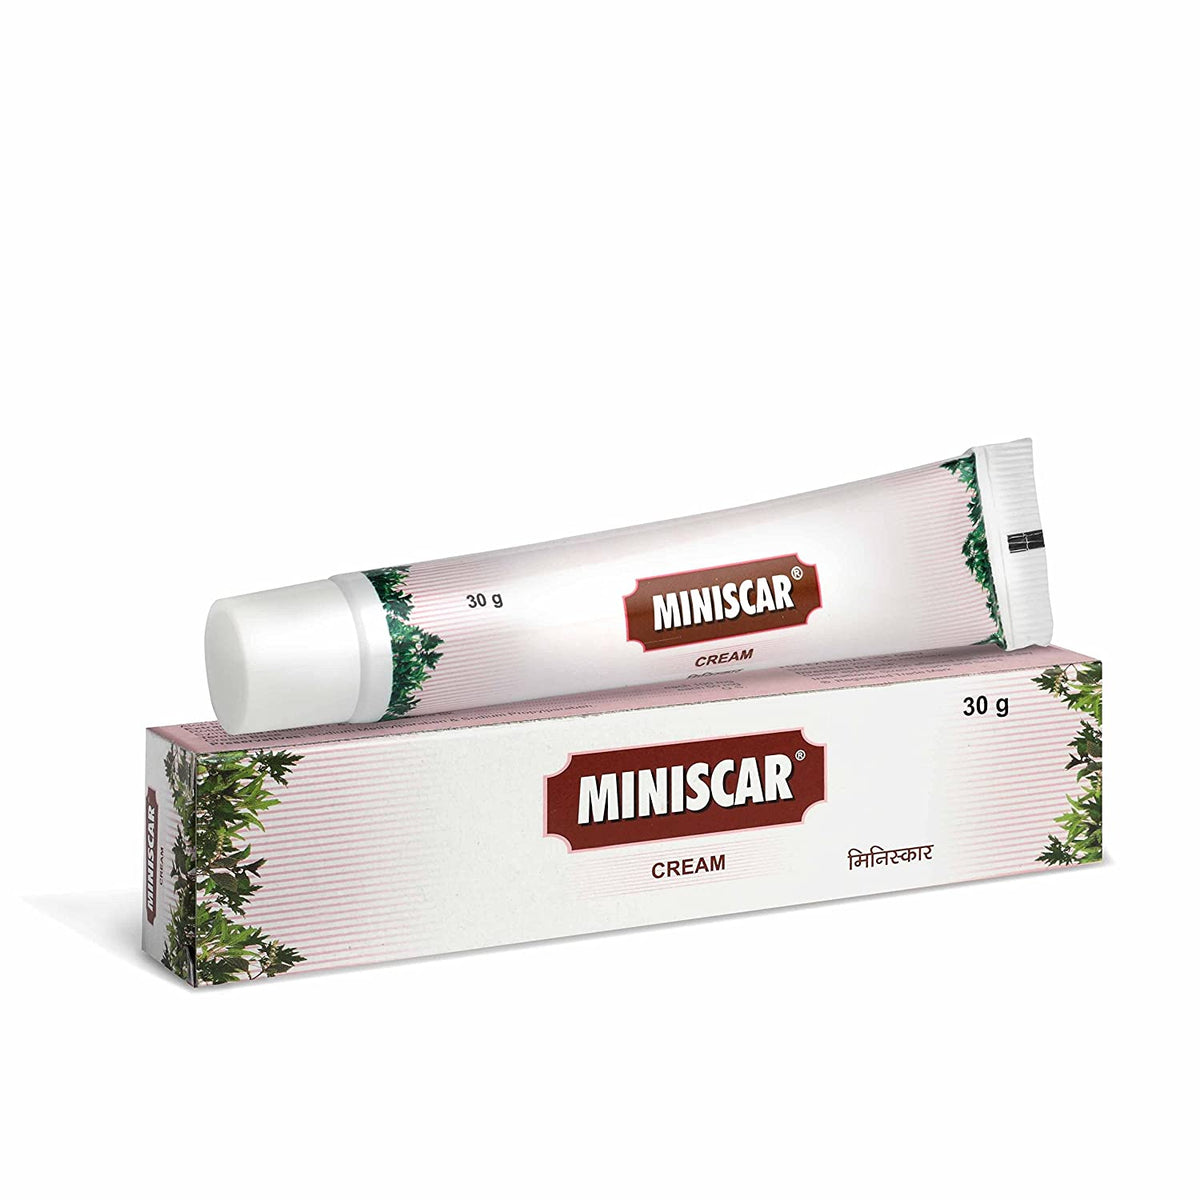 Miniscar cream